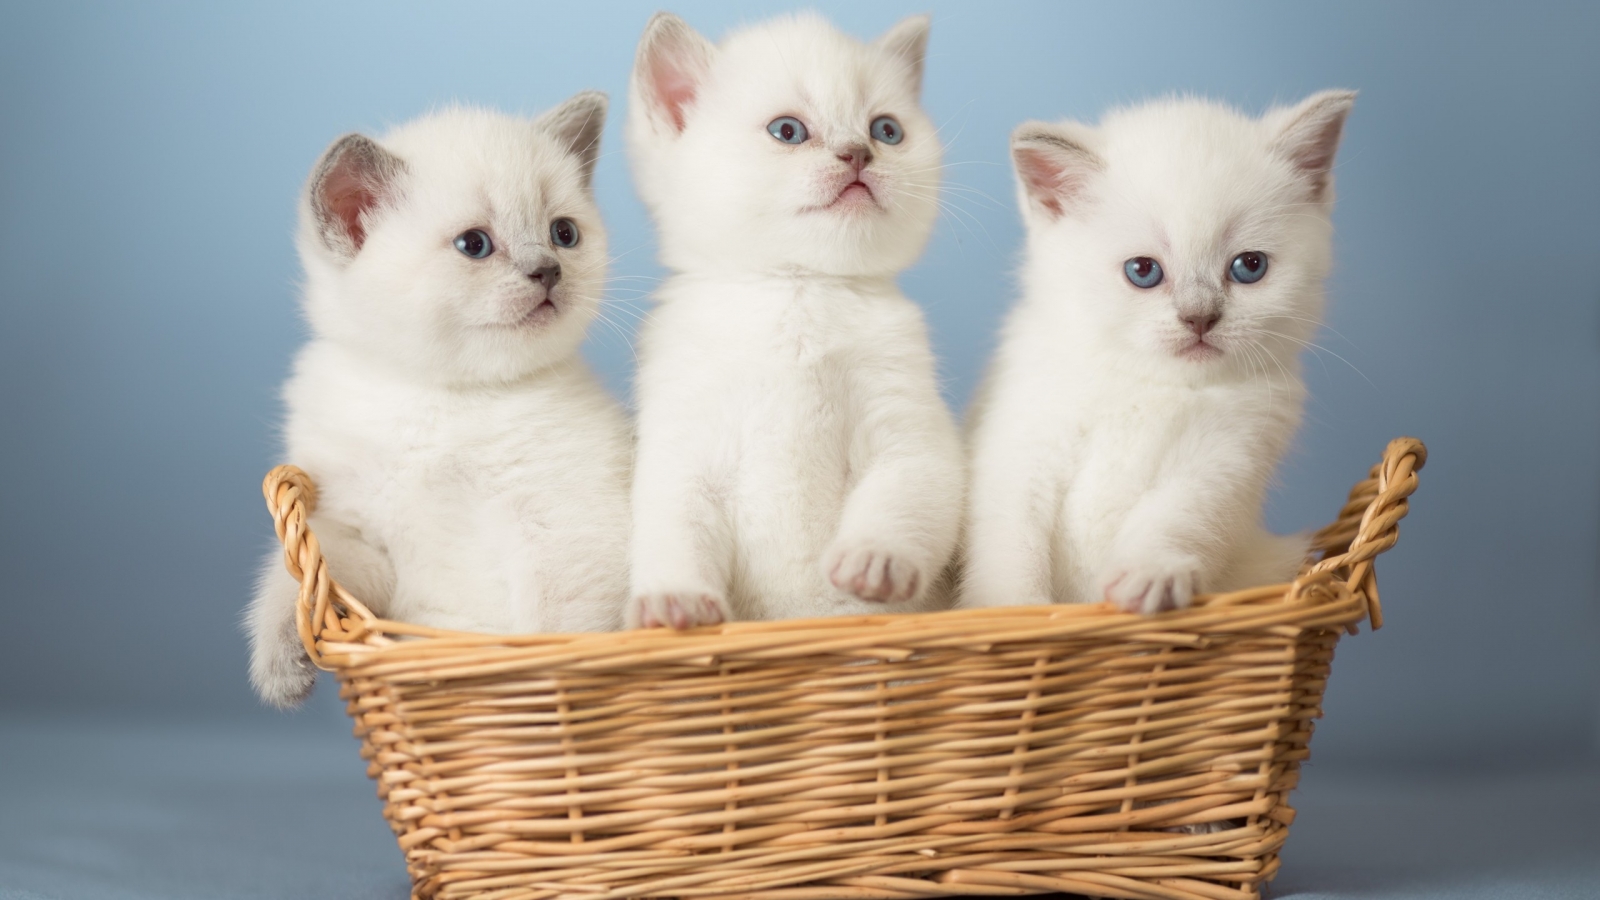 White Kittens for 1600 x 900 HDTV resolution